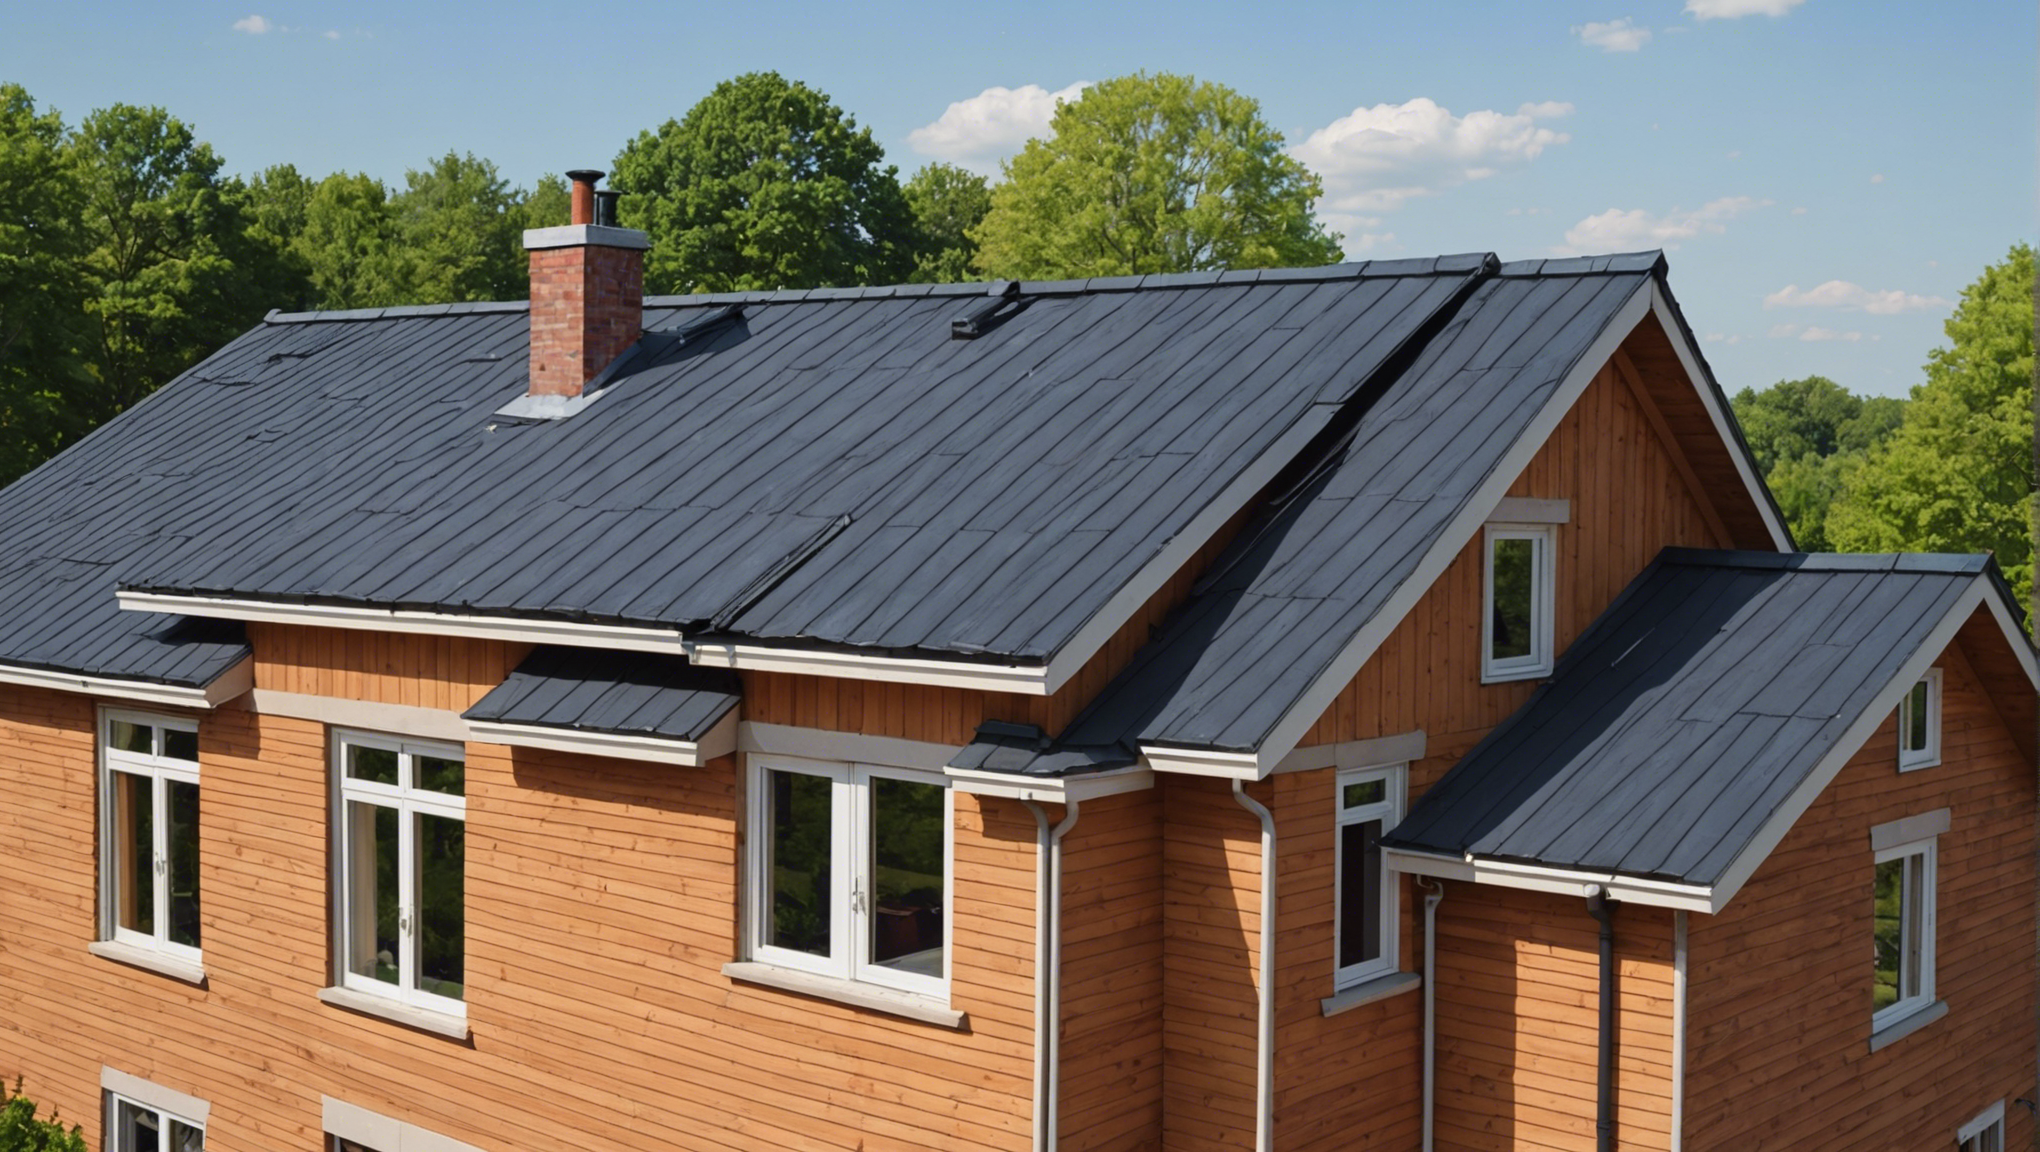 découvrez nos conseils pratiques pour améliorer l'isolation de votre toiture et réduire vos dépenses énergétiques. profitez d'une maison plus confortable grâce à nos solutions d'isolation adaptées à vos besoins.